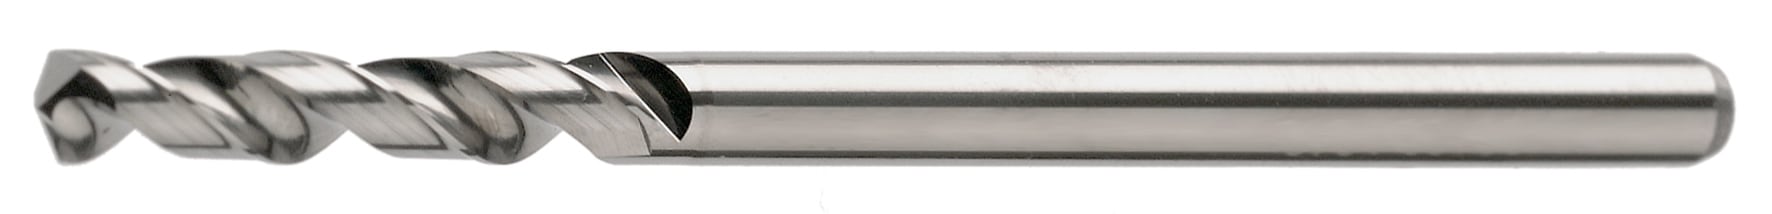 VHM-Mikrobohrer, 5-8xd, blank, 0,01 mm steigend